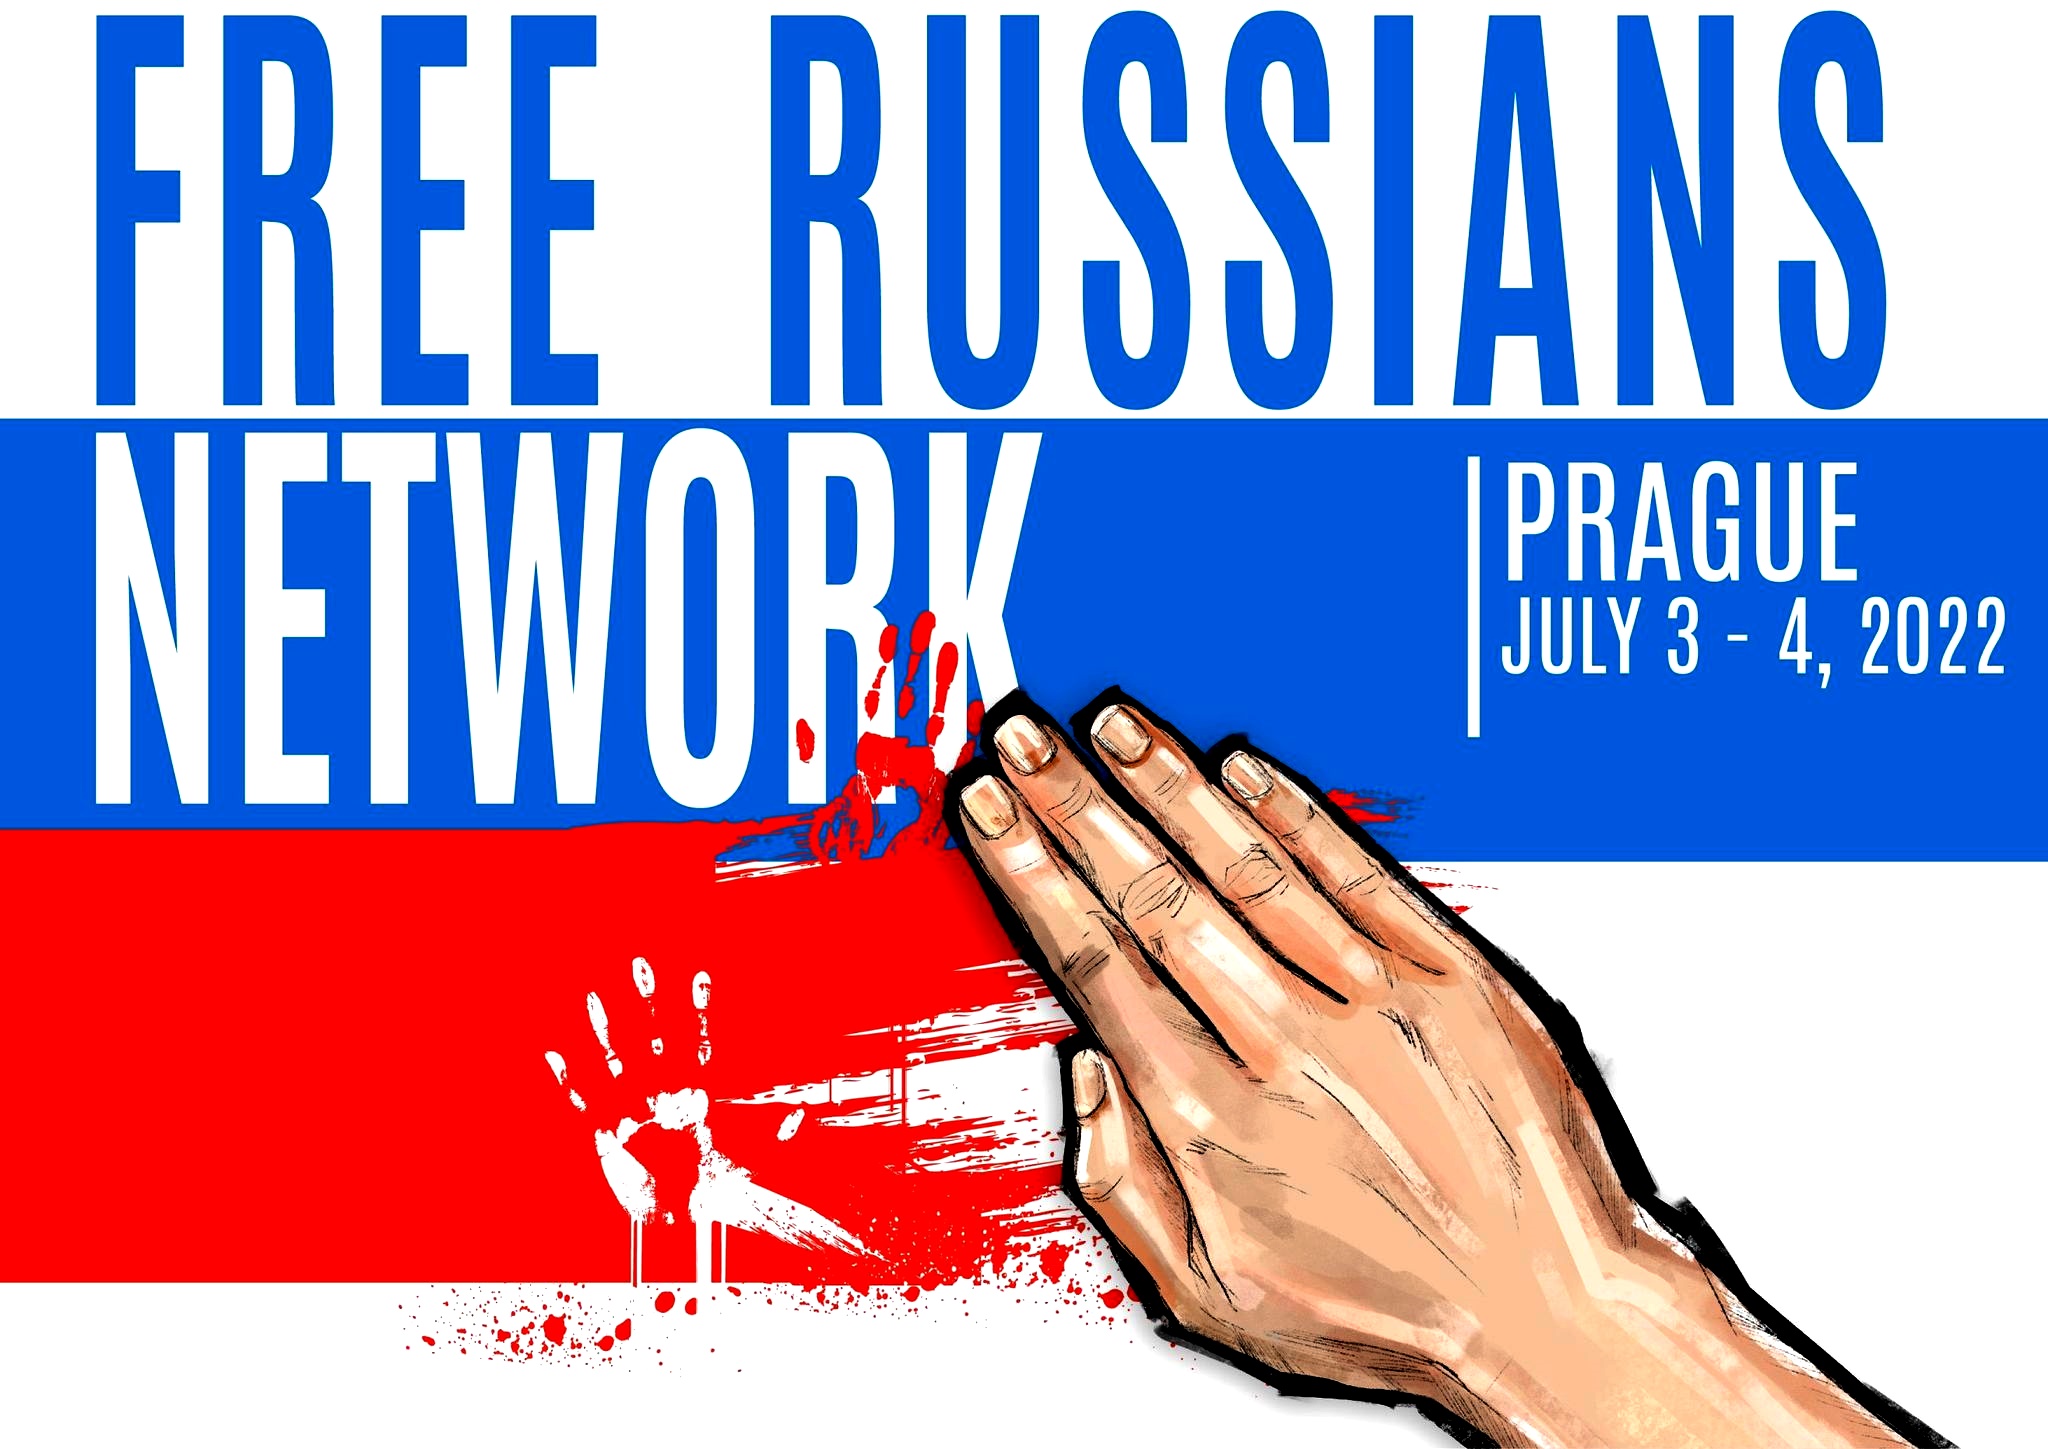 Как в Праге третьесортные либералы судьбу России решали и флага лишали...0